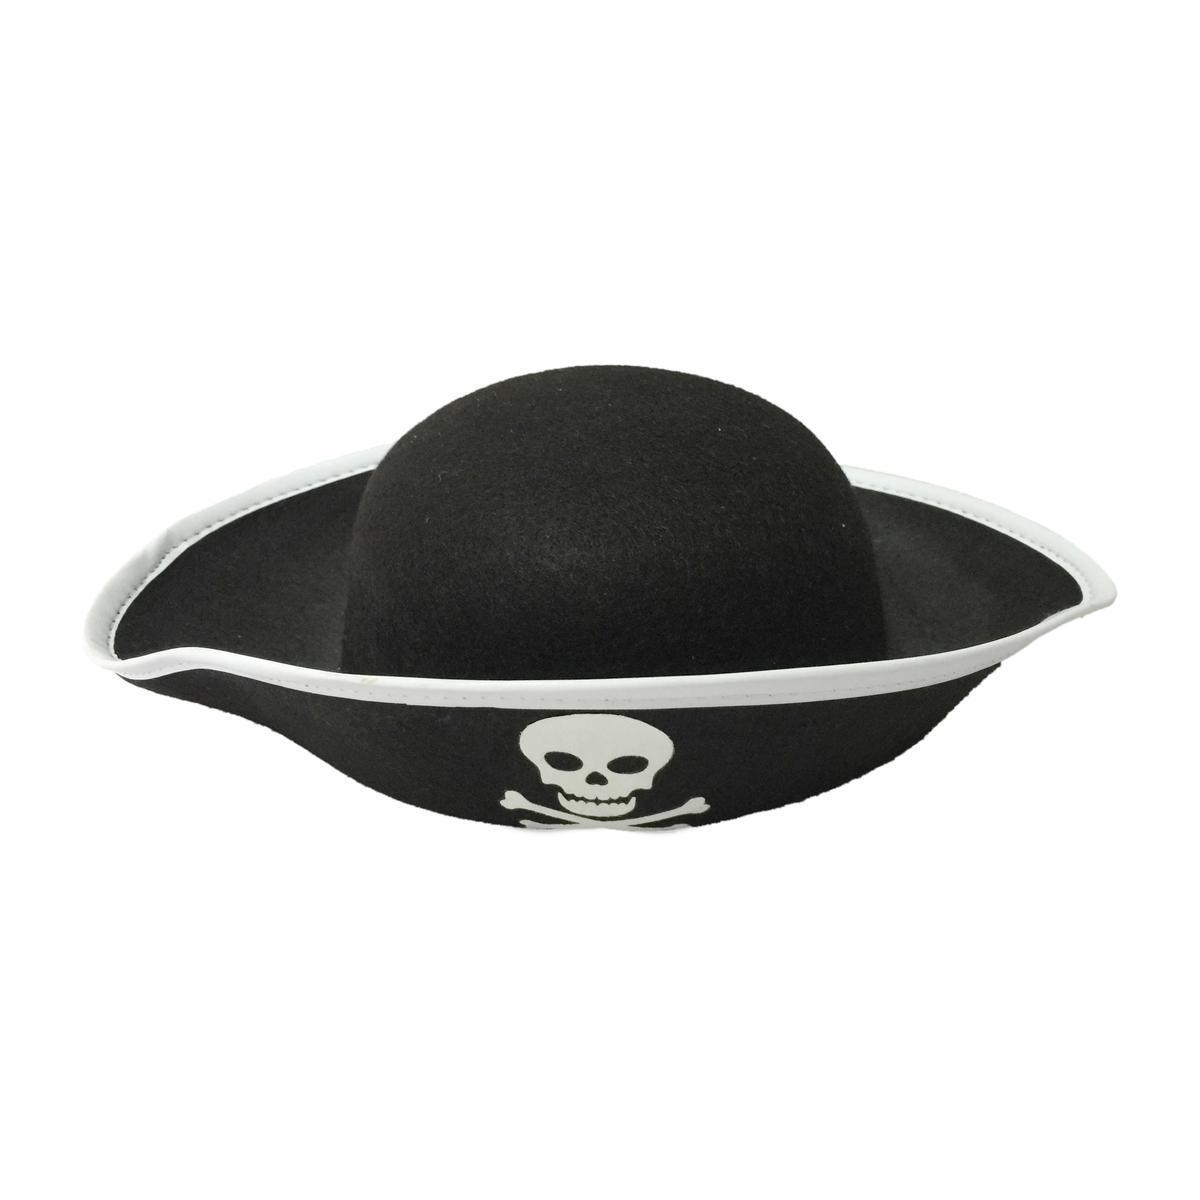 Chapeau de pirate - Feutrine - 30 x 25 cm - Noir et blanc